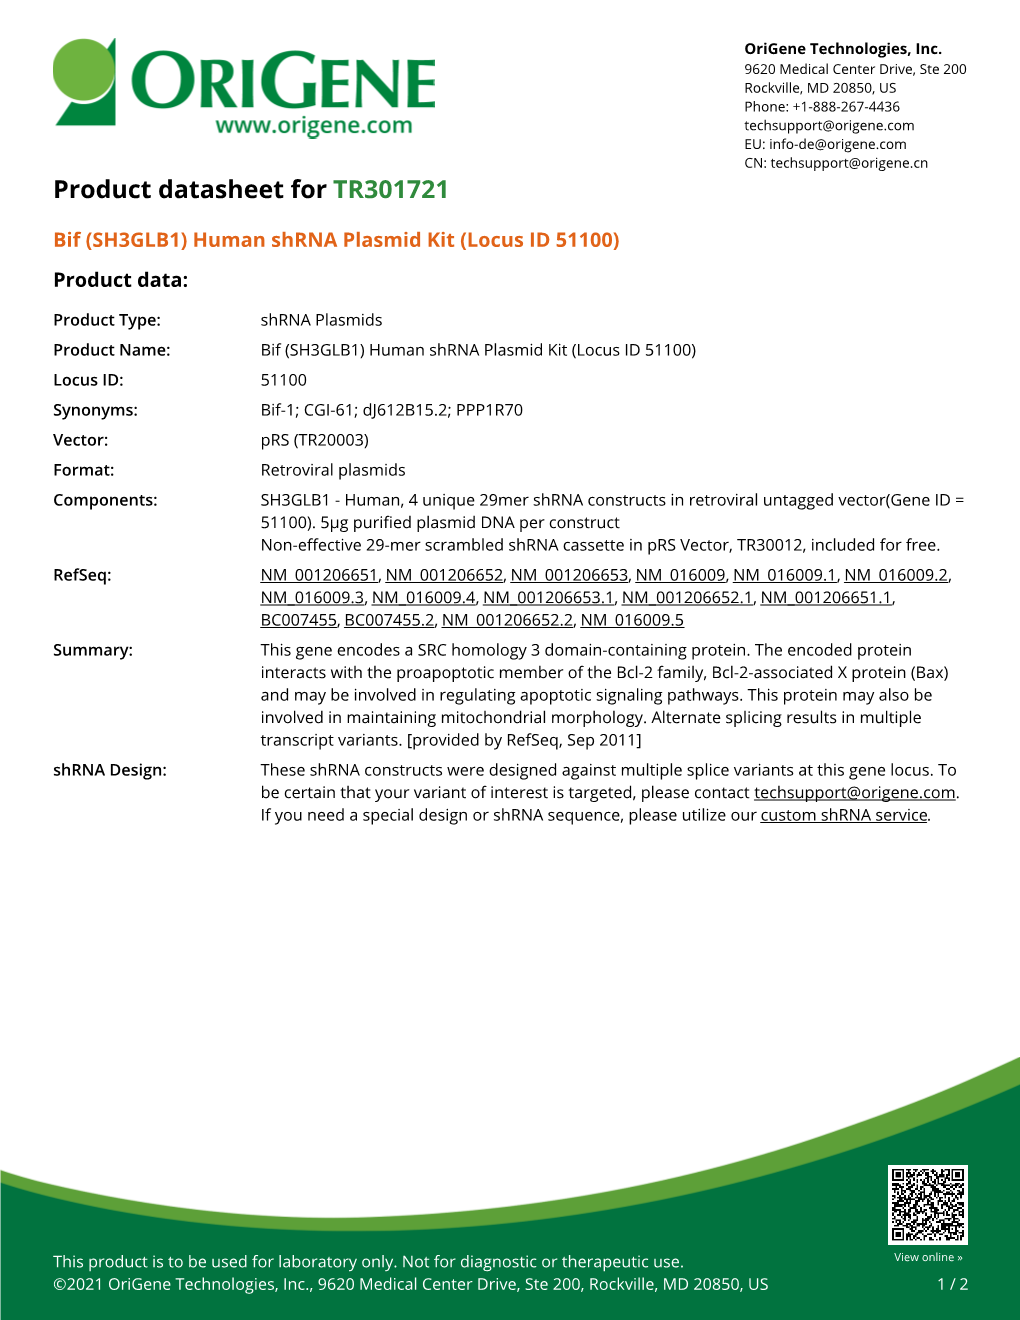 Bif (SH3GLB1) Human Shrna Plasmid Kit (Locus ID 51100) Product Data